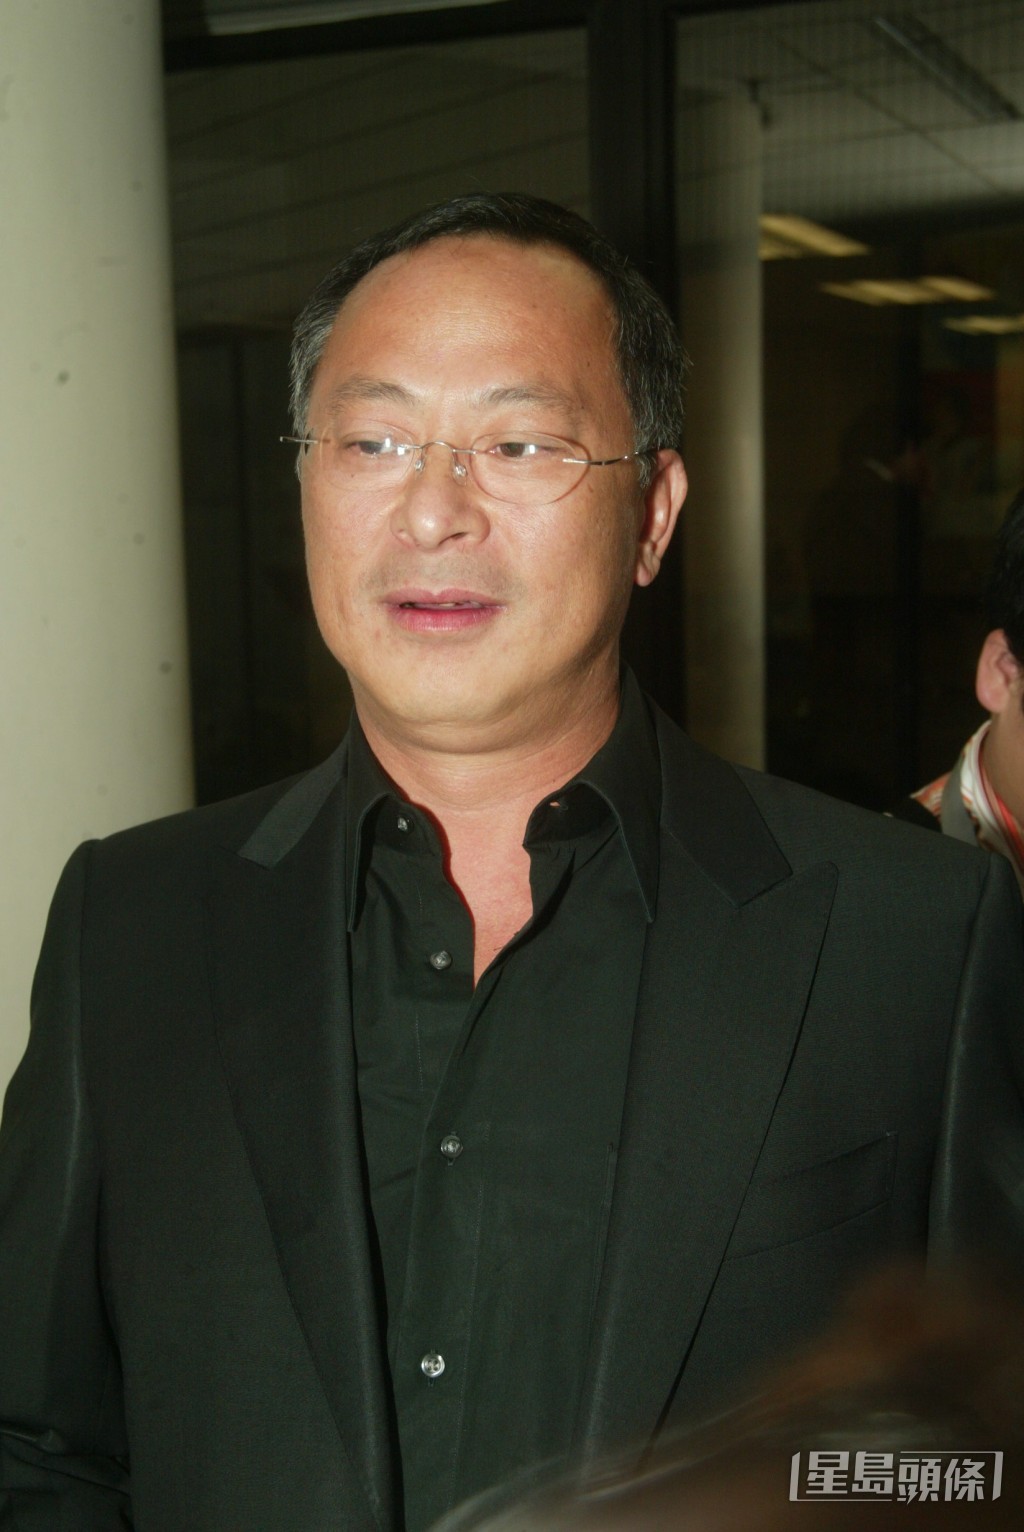 杜琪峯是香港電影殿堂級導演之一。